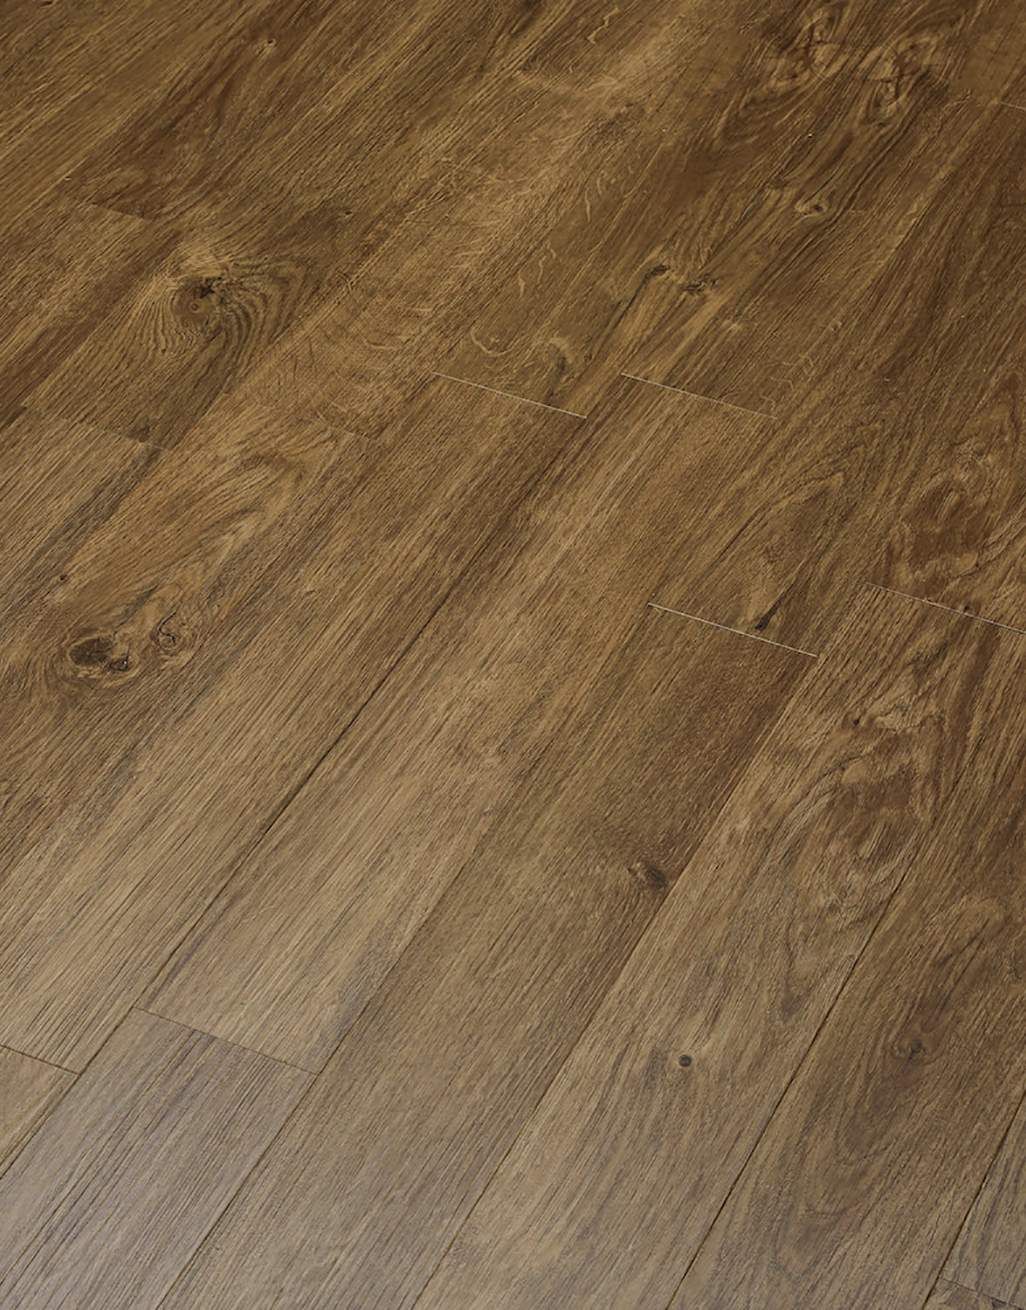 Herringbone - Golden Oak LVT Flooring 5